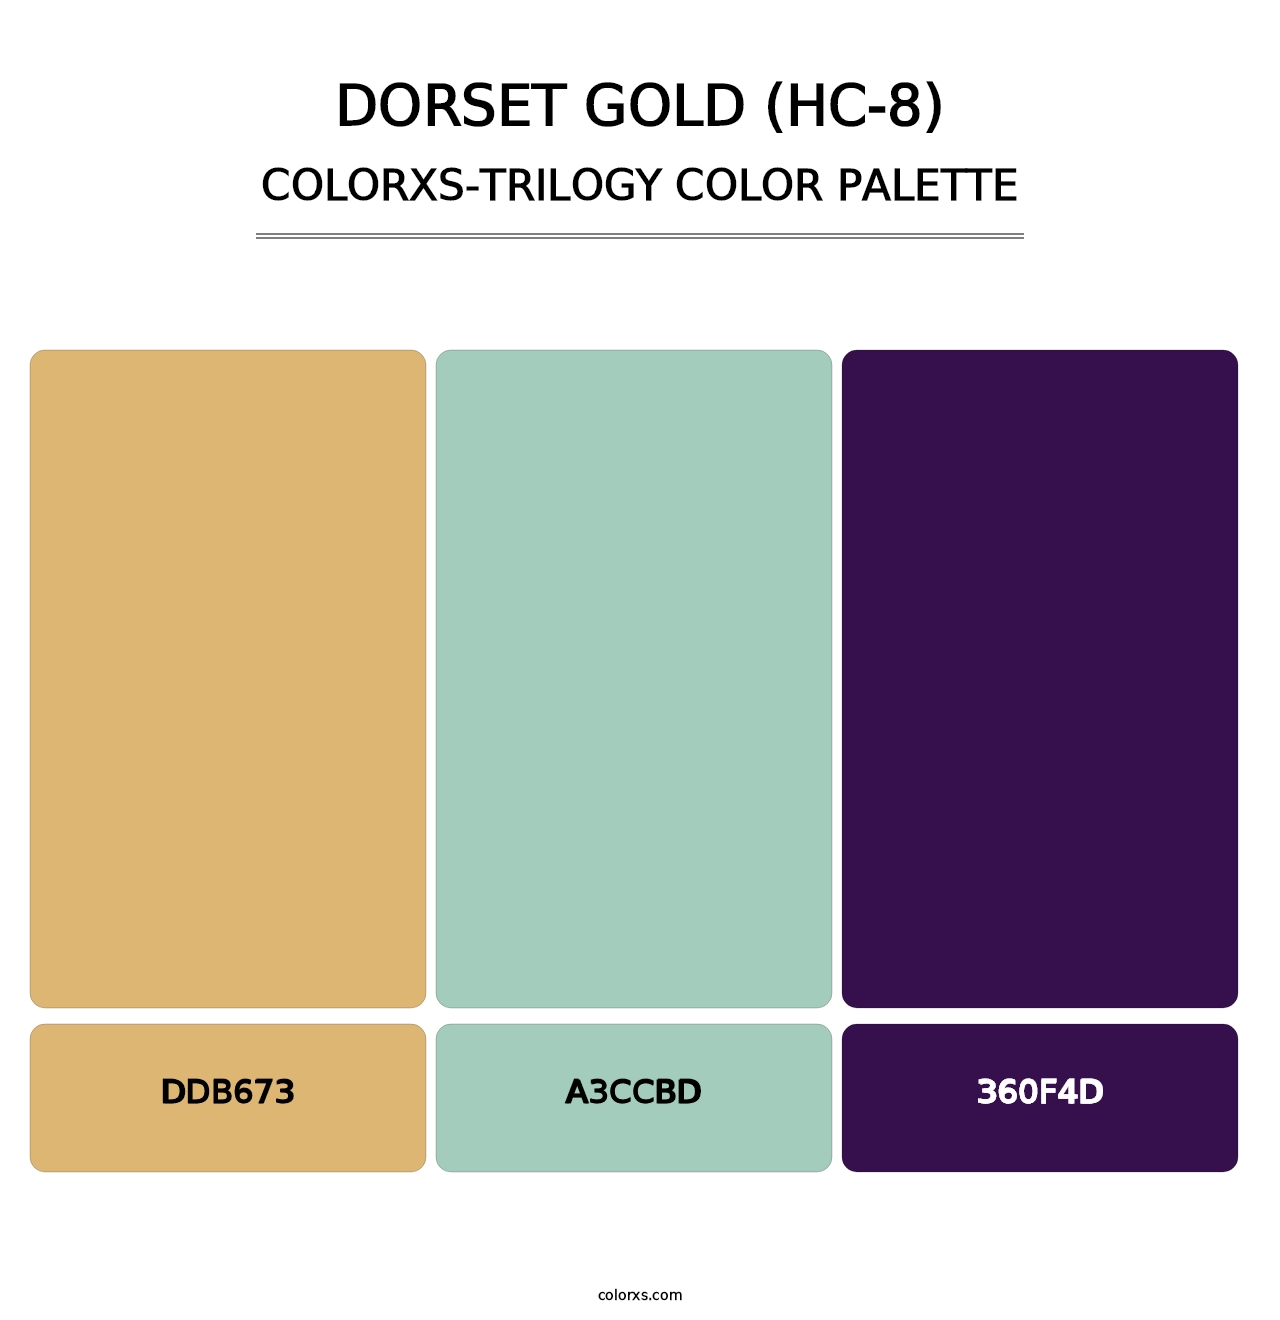 Dorset Gold (HC-8) - Colorxs Trilogy Palette